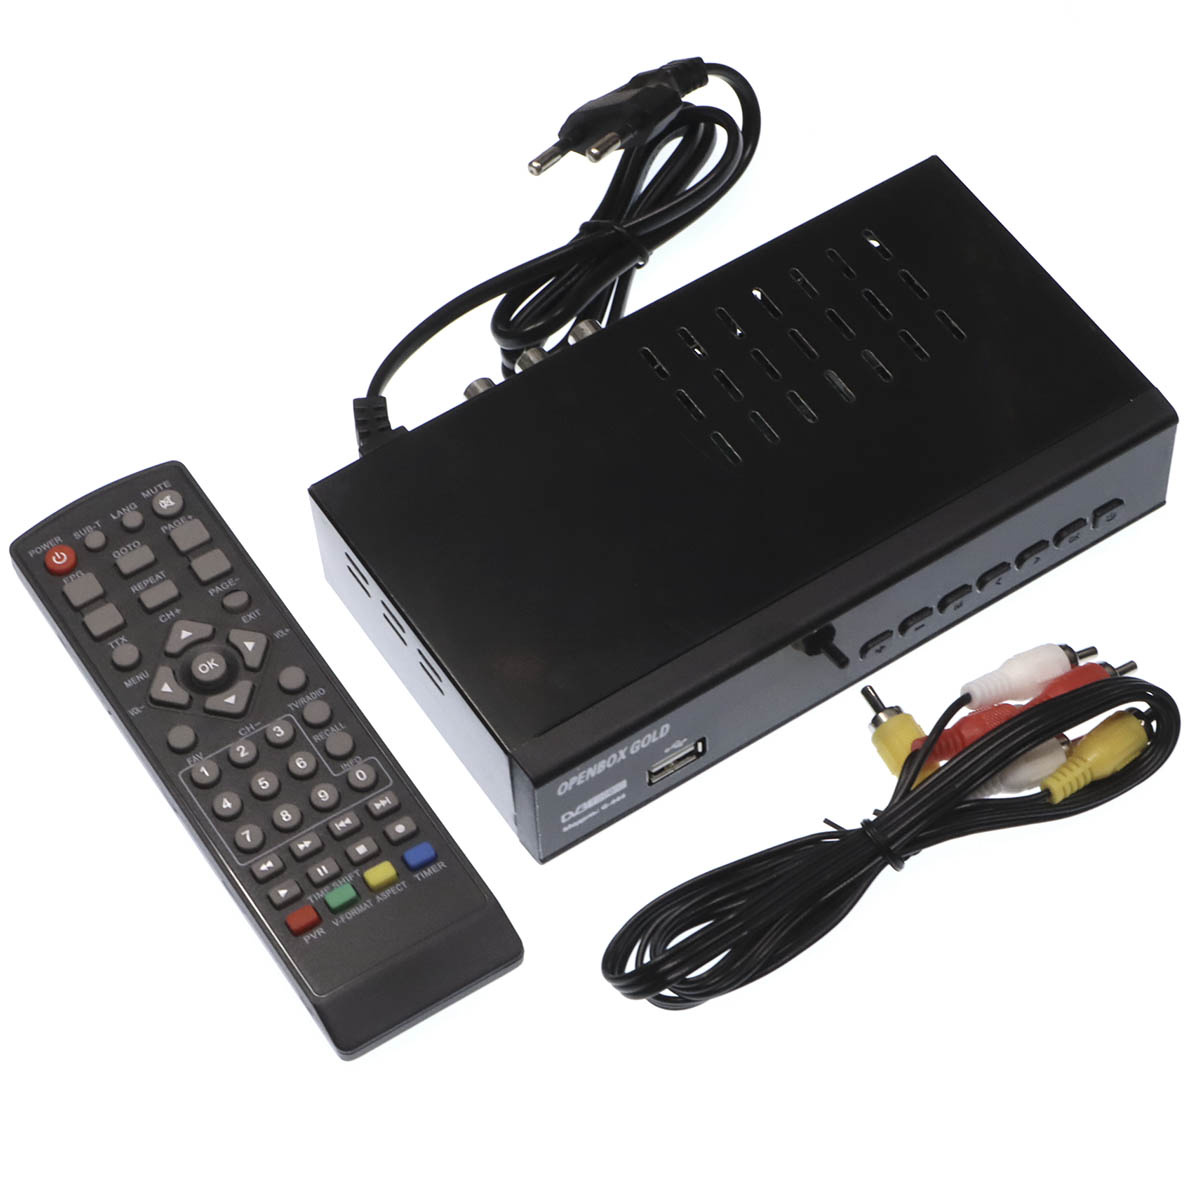 Цифровой эфирный приемник, ТВ приставка OPENBOX G-444, DVB-T2, цвет черный